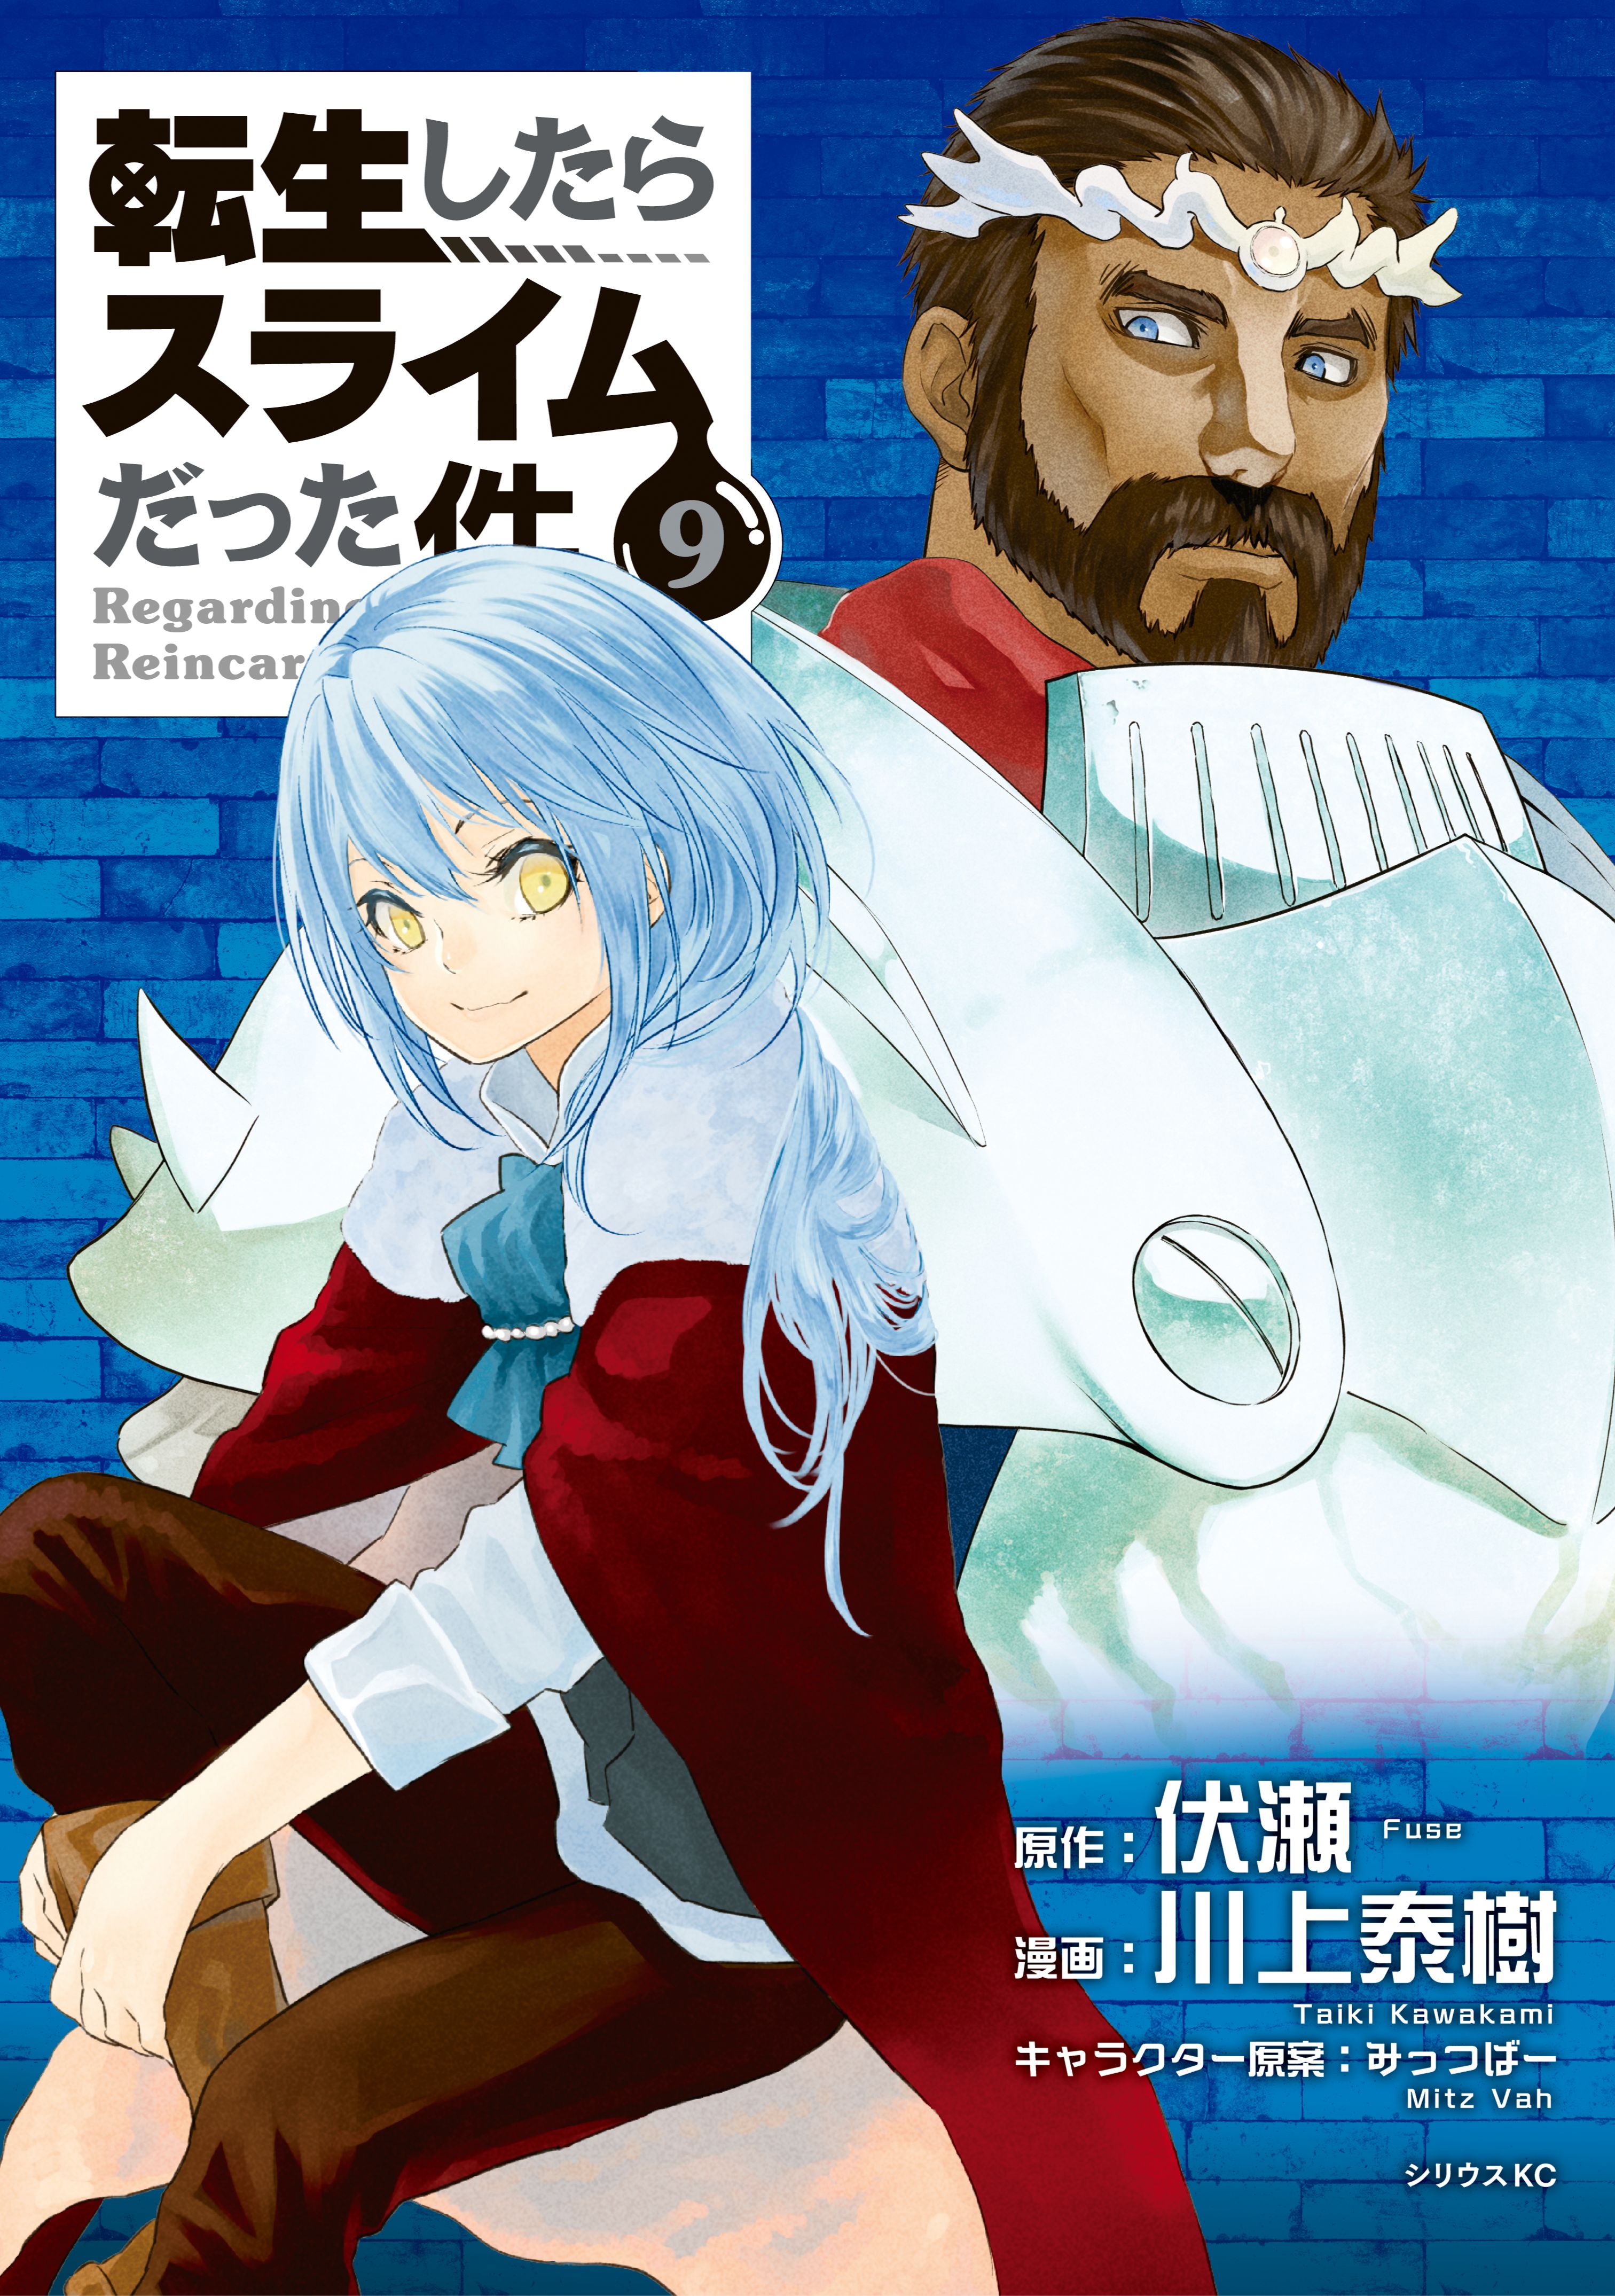 tensei shitara slime datta ken light novel translated